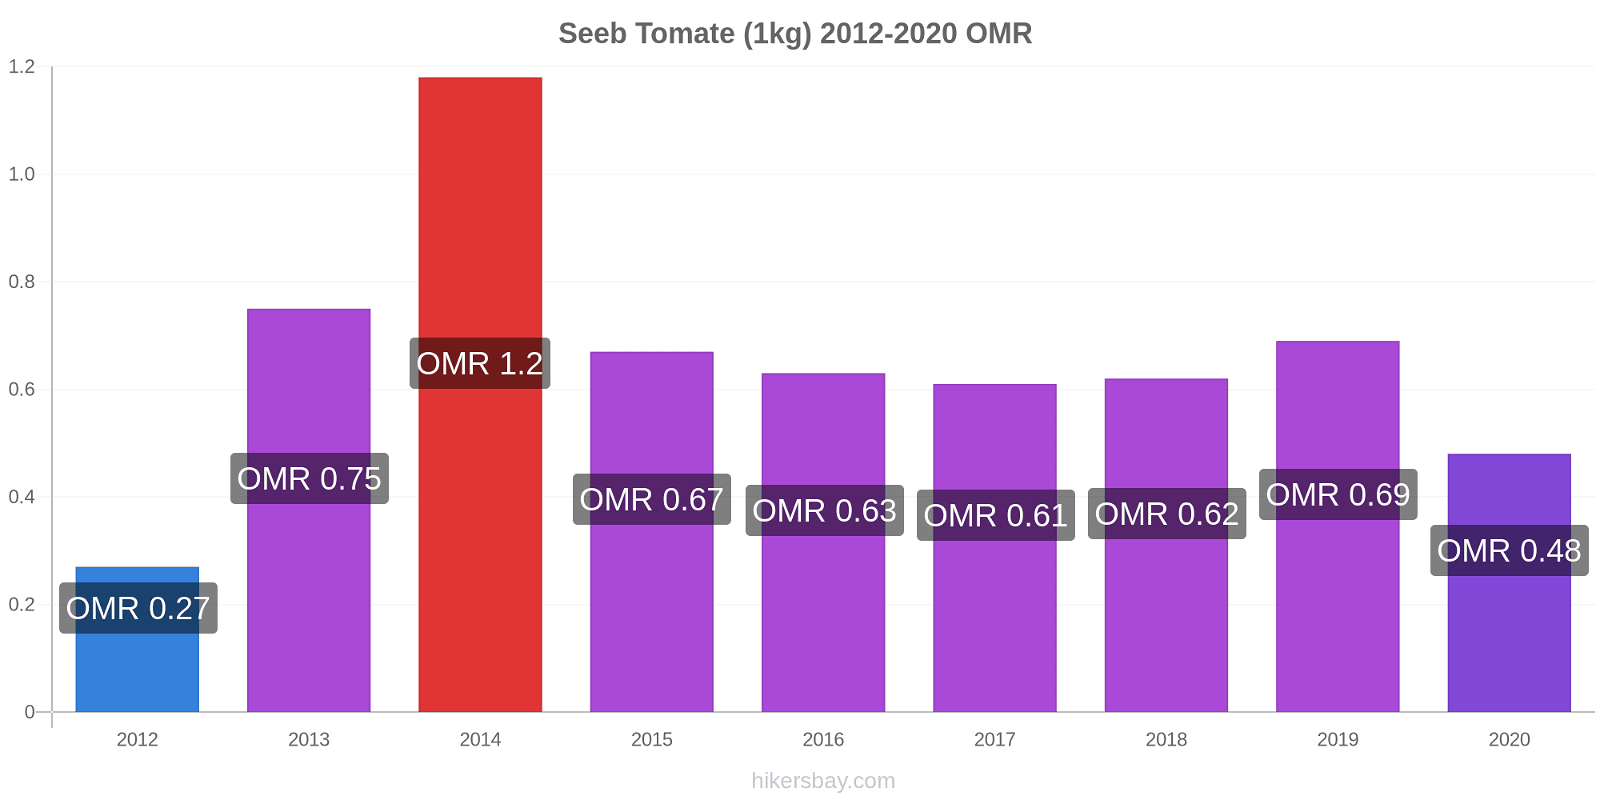 Seeb cambios de precios Tomate (1kg) hikersbay.com